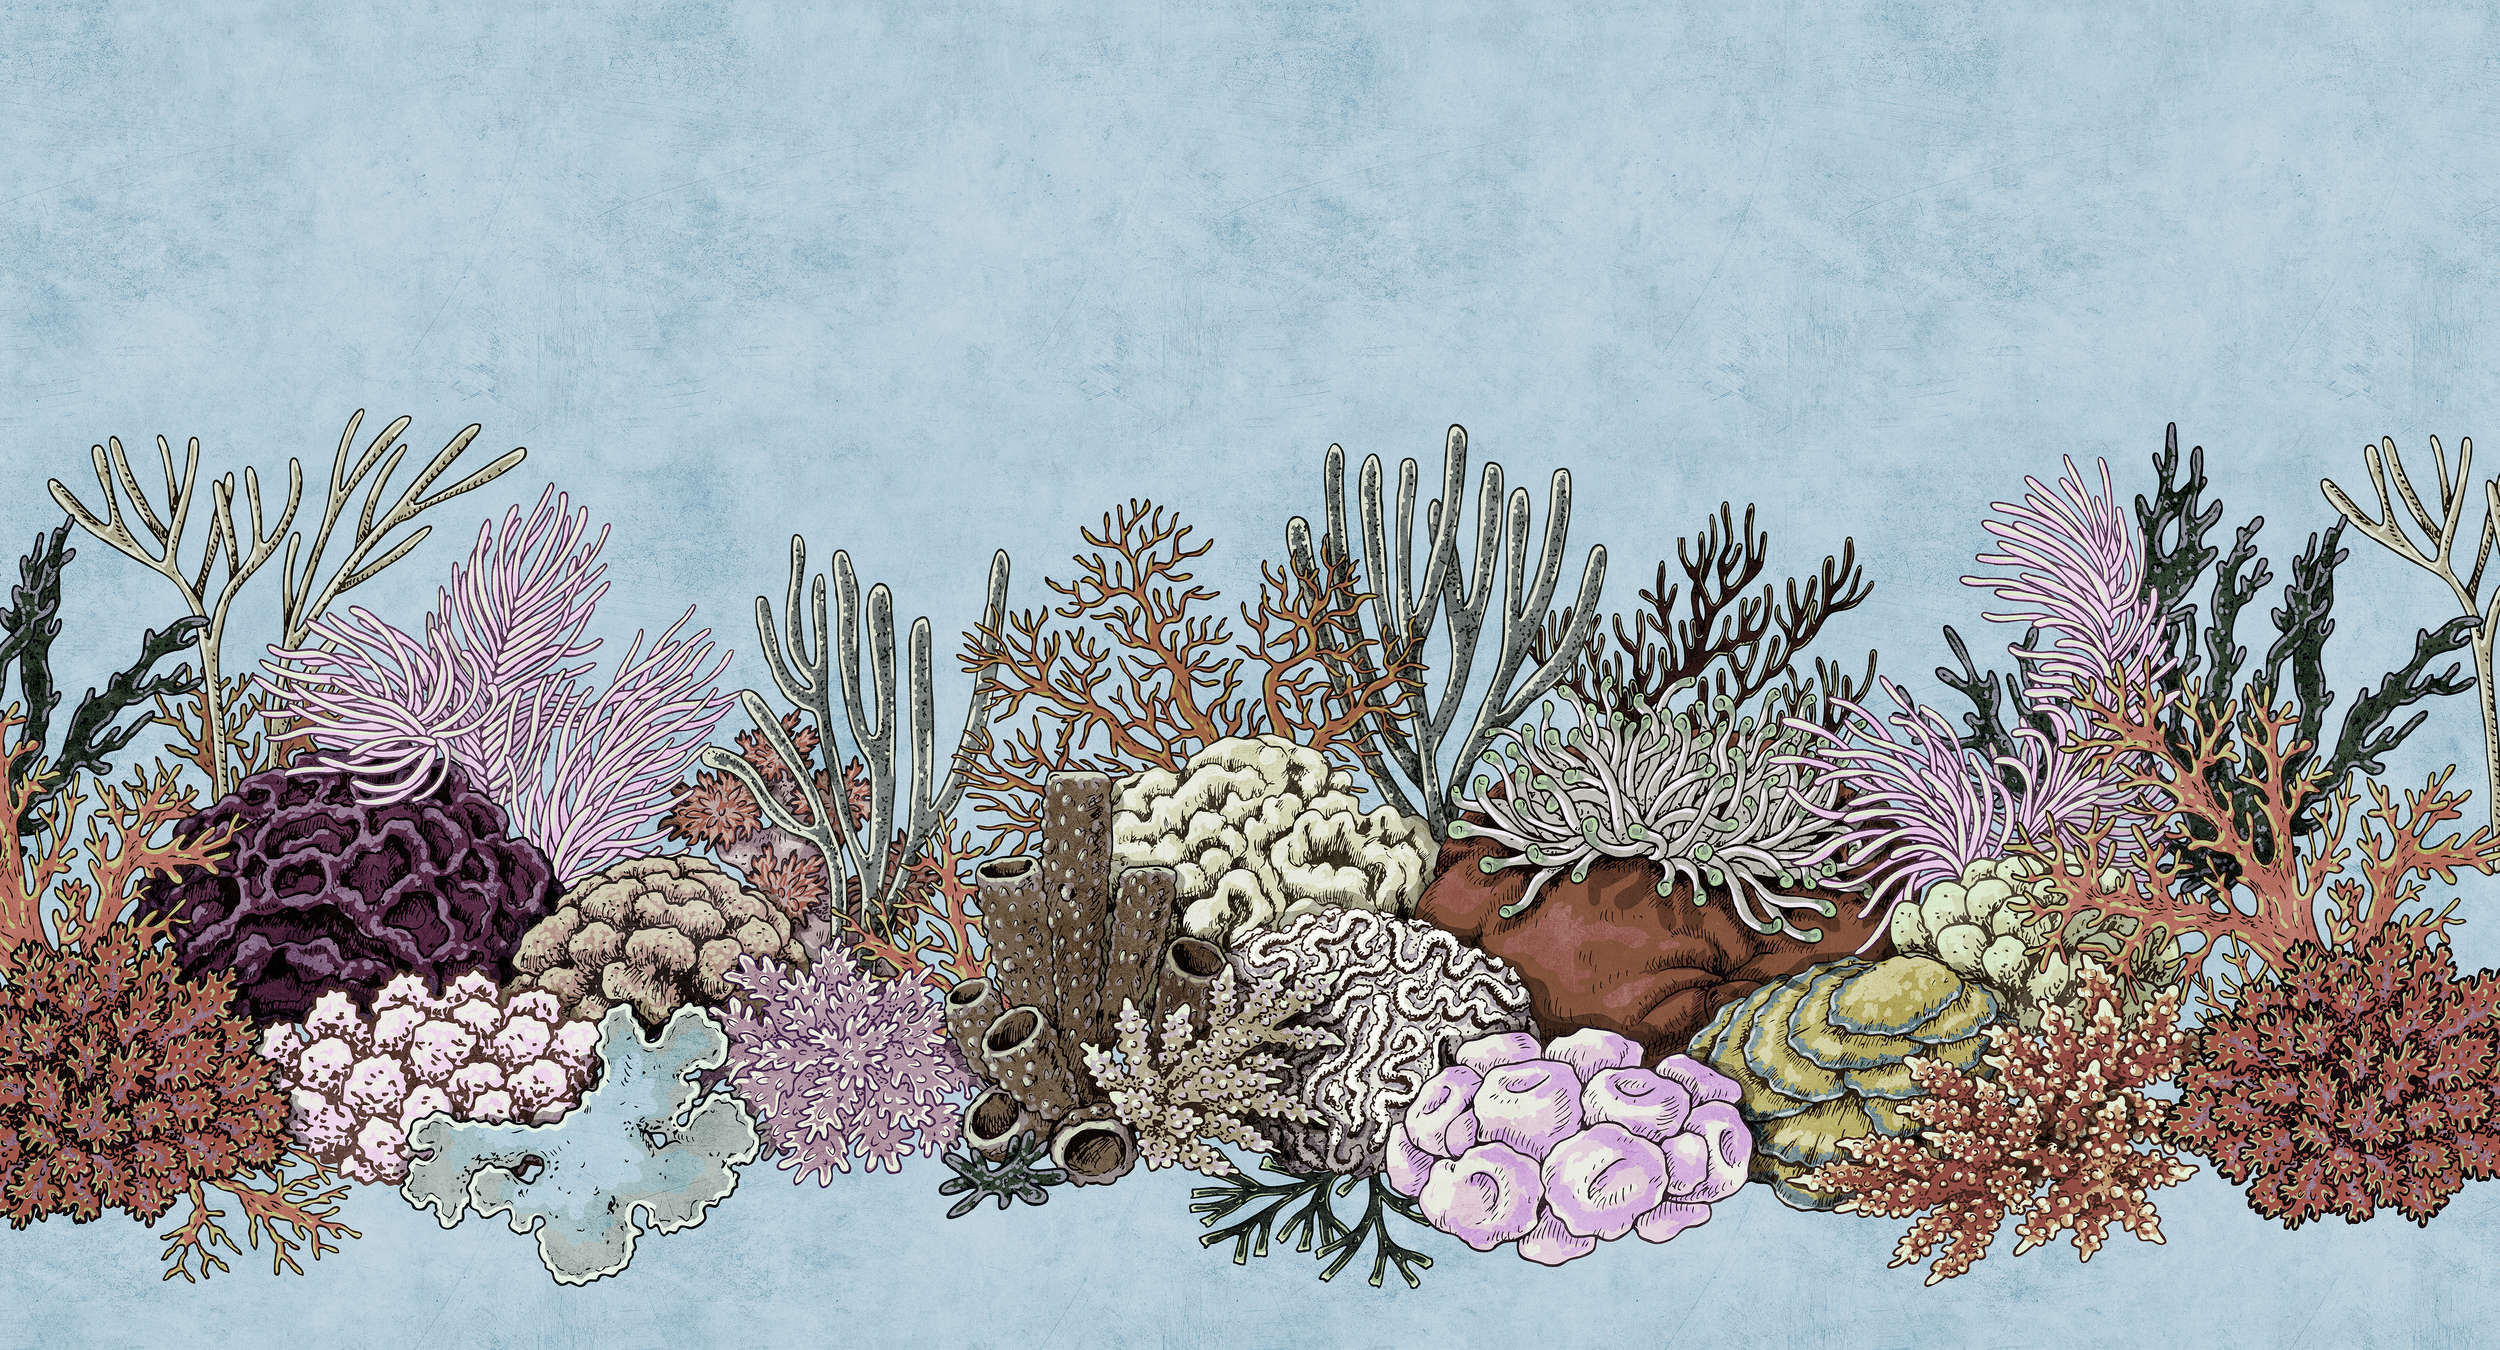             Octopus's Garden 1 - Underwater wallpaper with corals in blotting paper structure - Blue, Pink | Matt smooth fleece
        